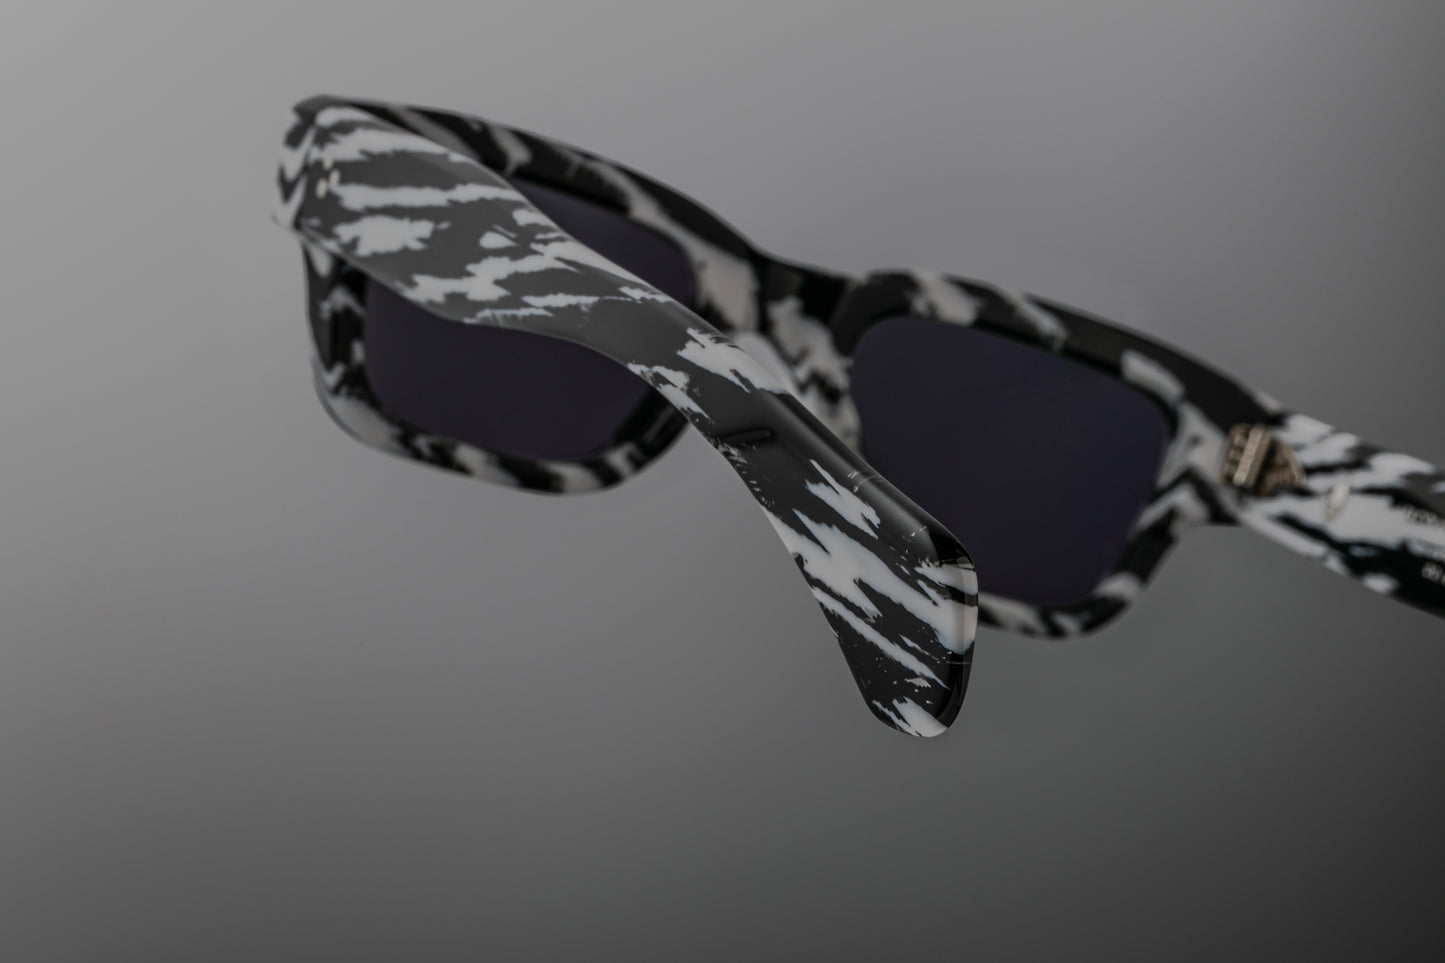 jeff sunglasses in zebra print